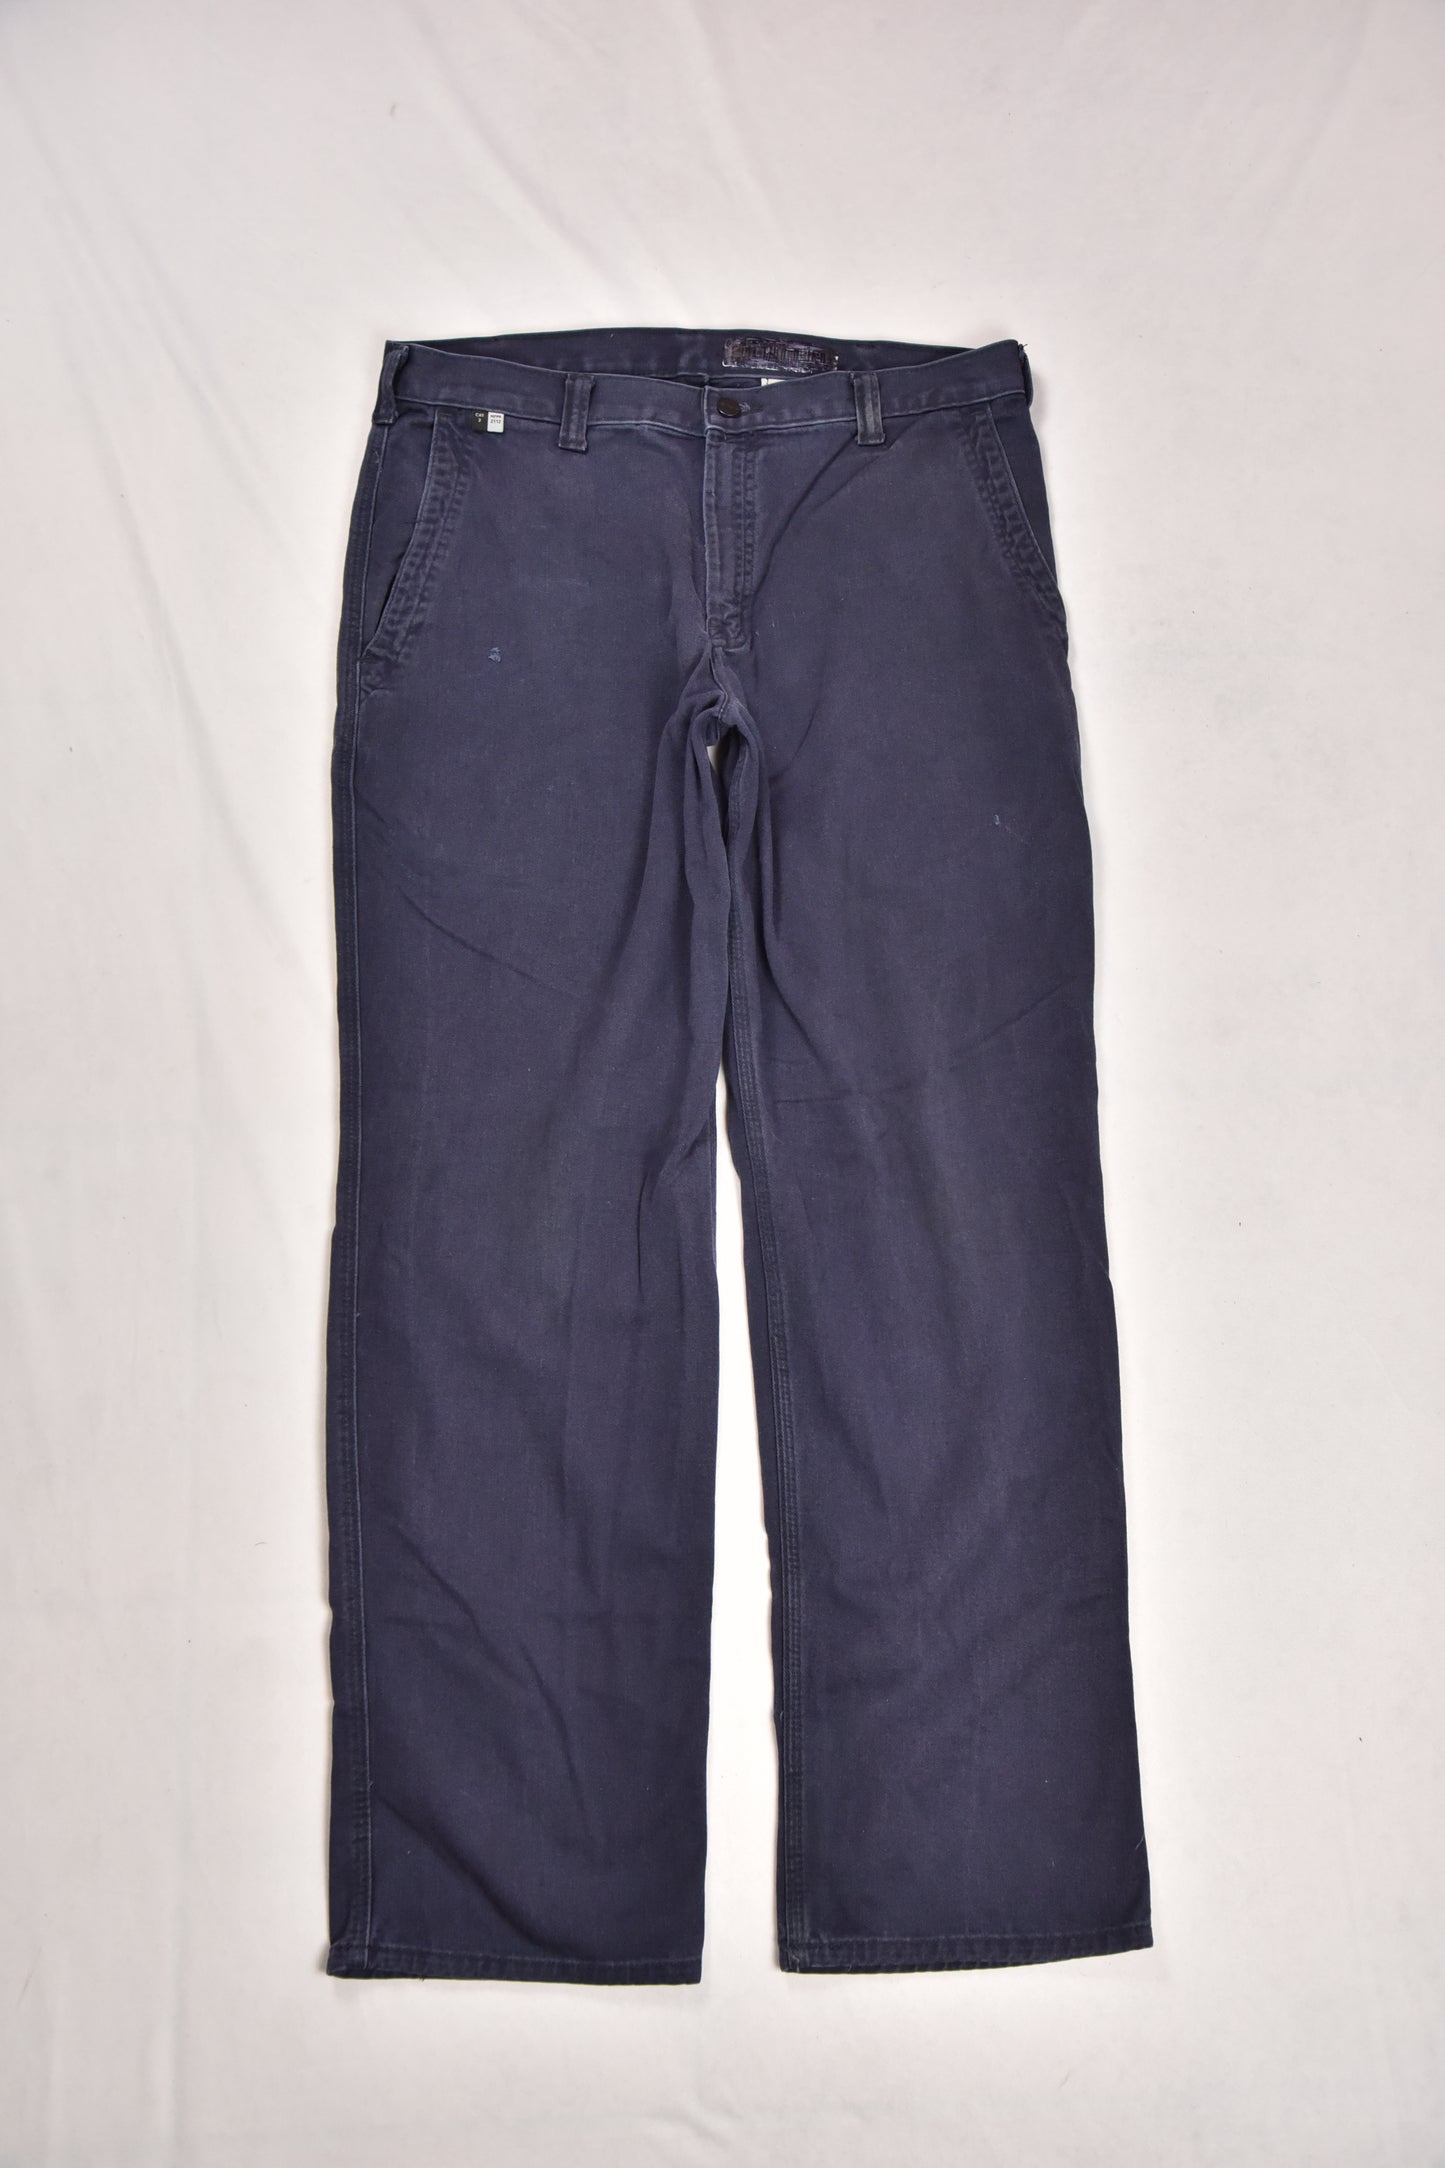 Carhartt Workwear Pants Flame Resistant Vintage / 36x32